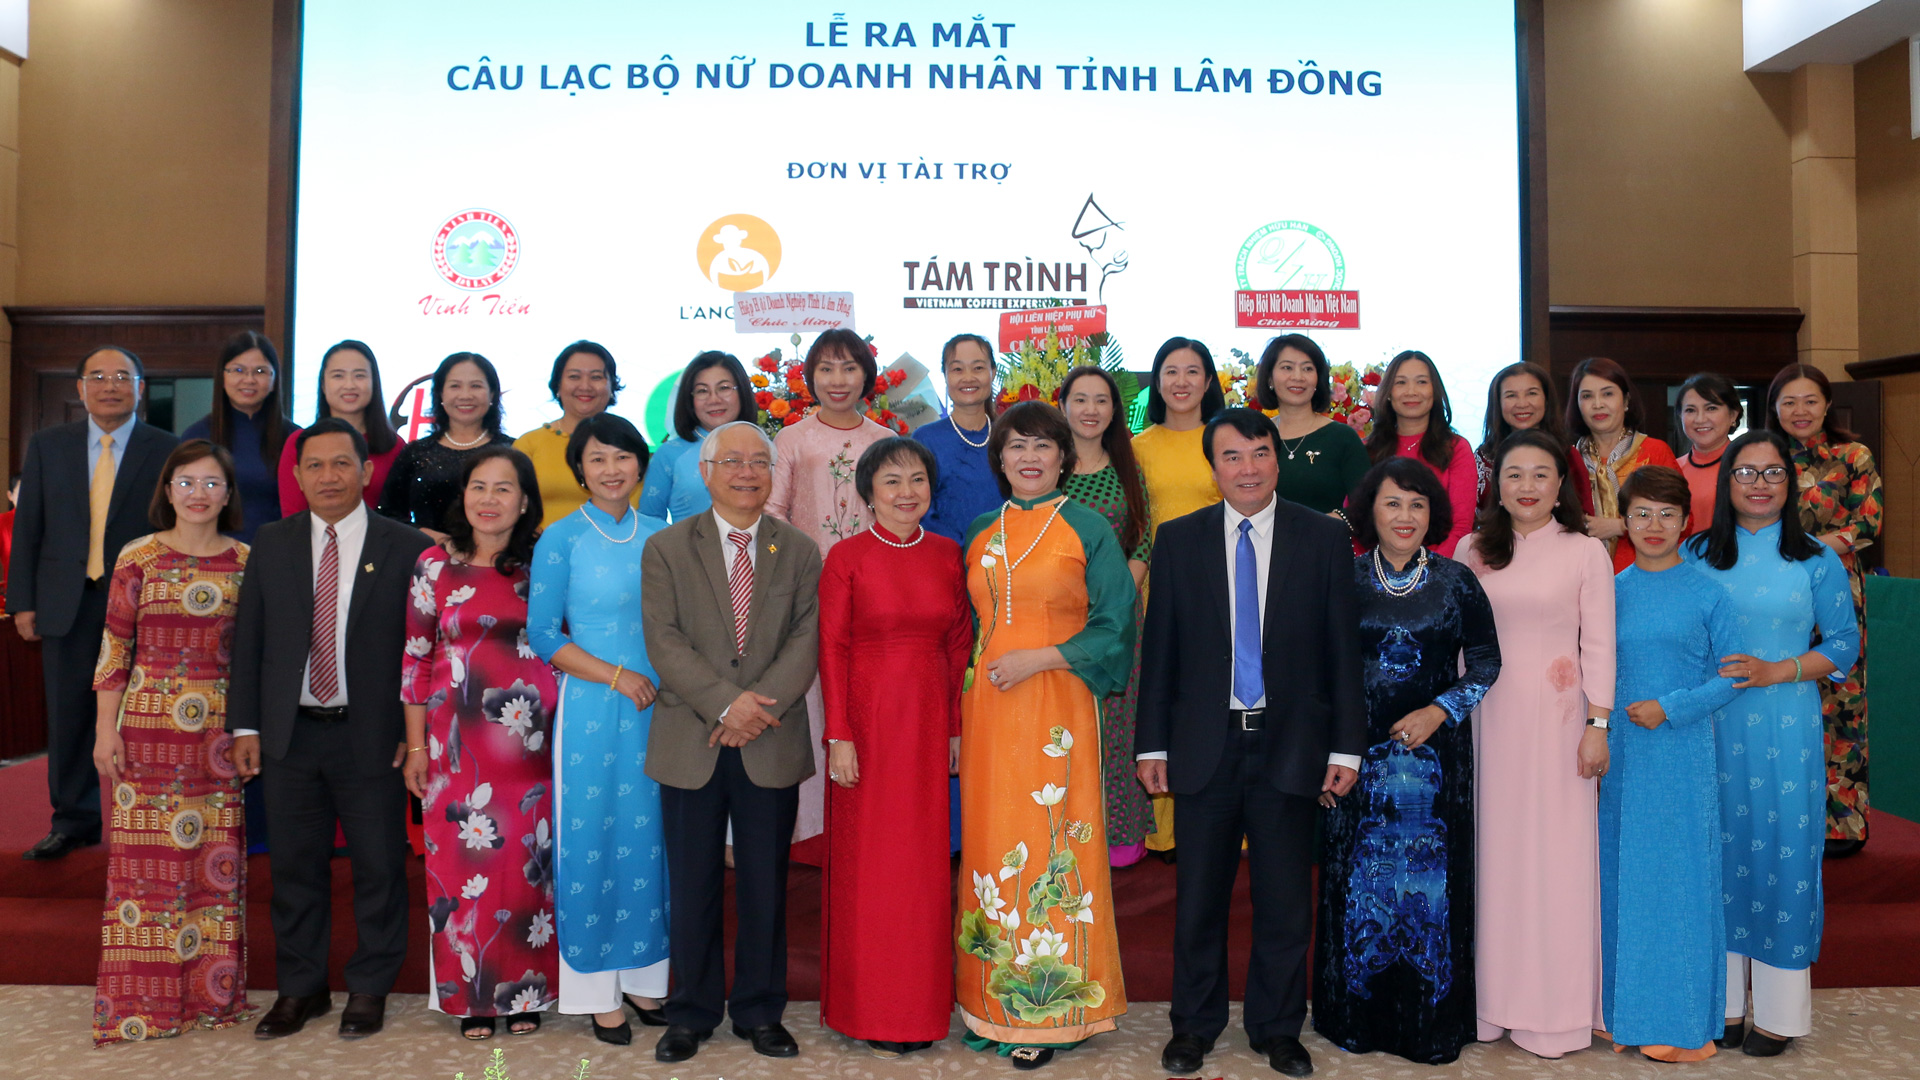 Đại diện lãnh đạo tỉnh chụp hình lưu niệm với Câu lạc bộ Nữ doanh nhân tỉnh Lâm Đồng